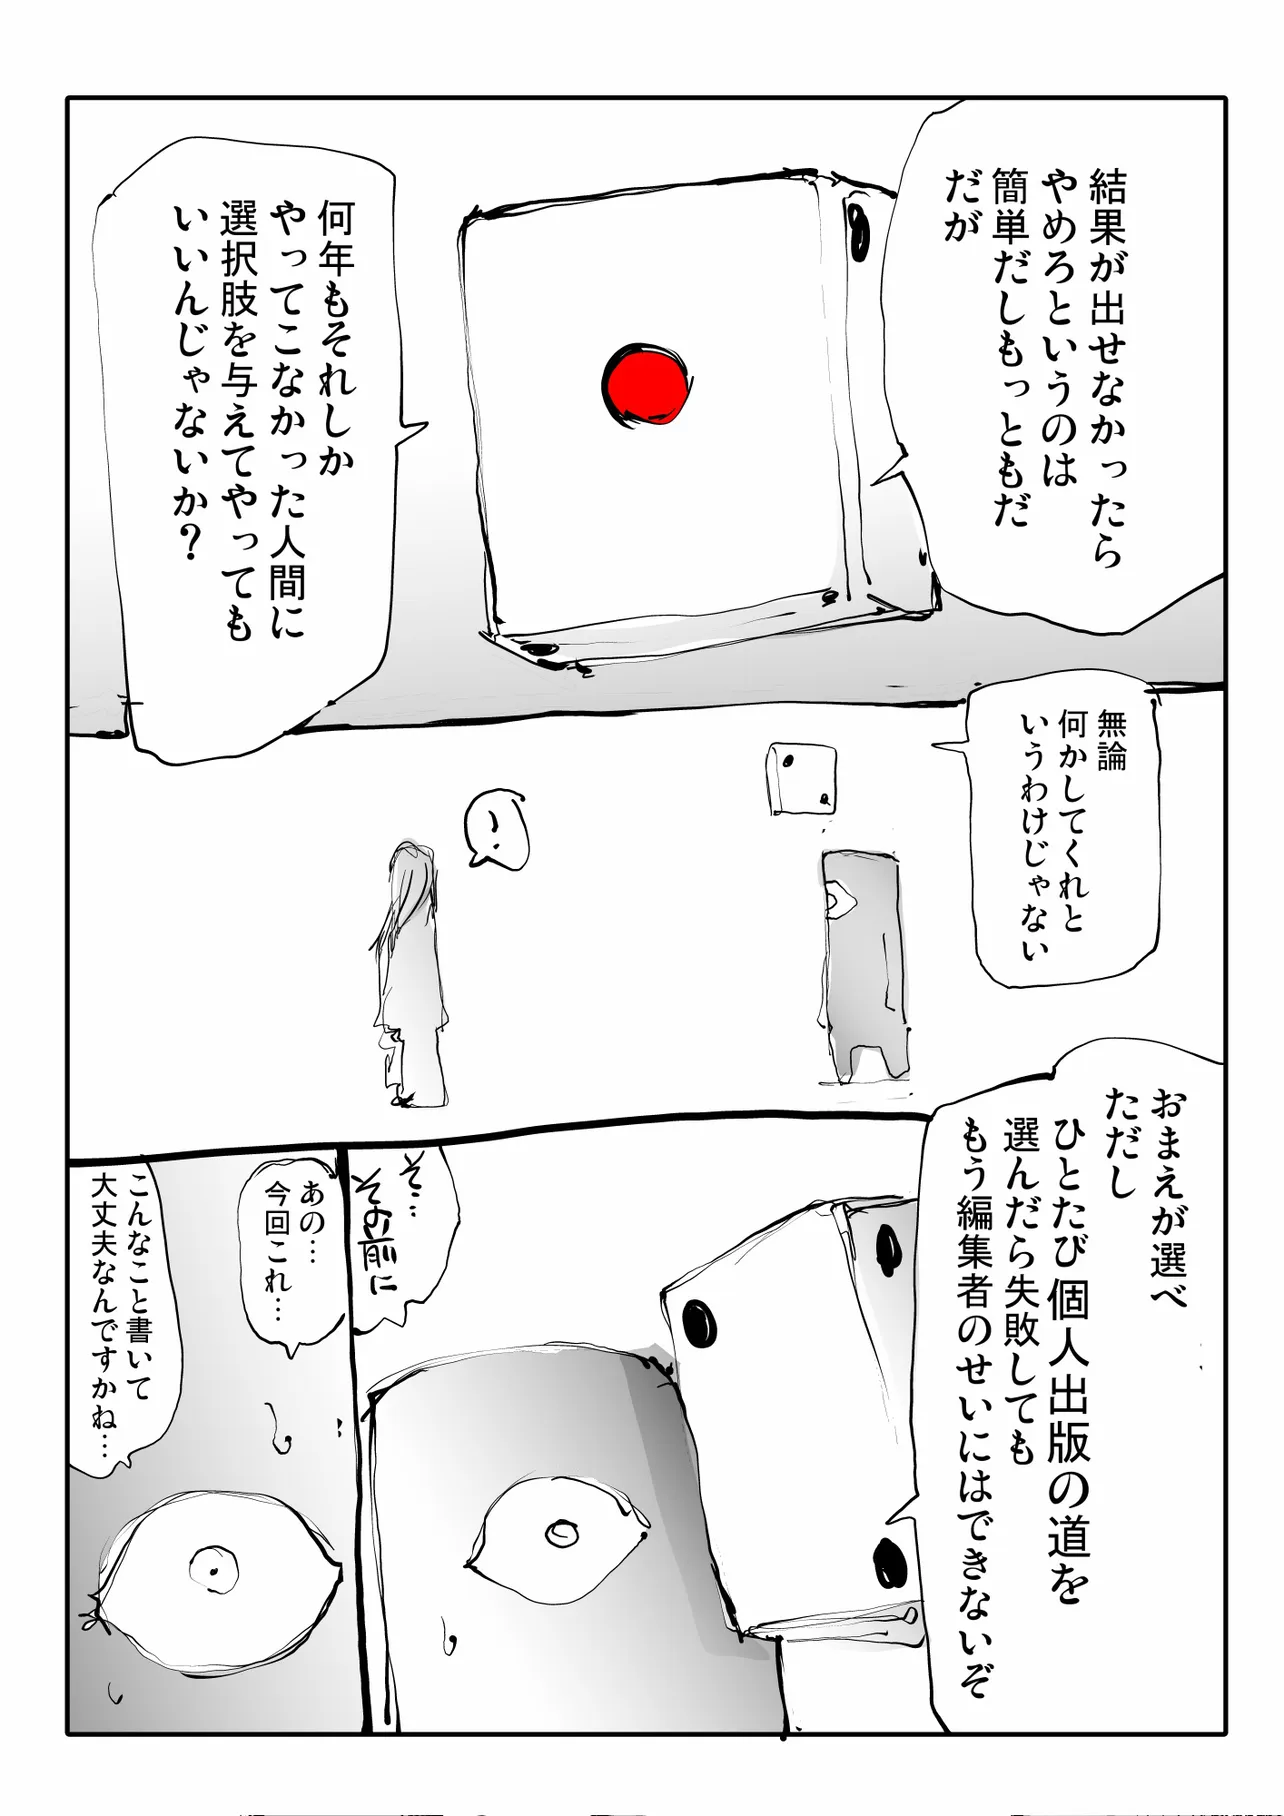 『まんが家すごろく』(36/48)